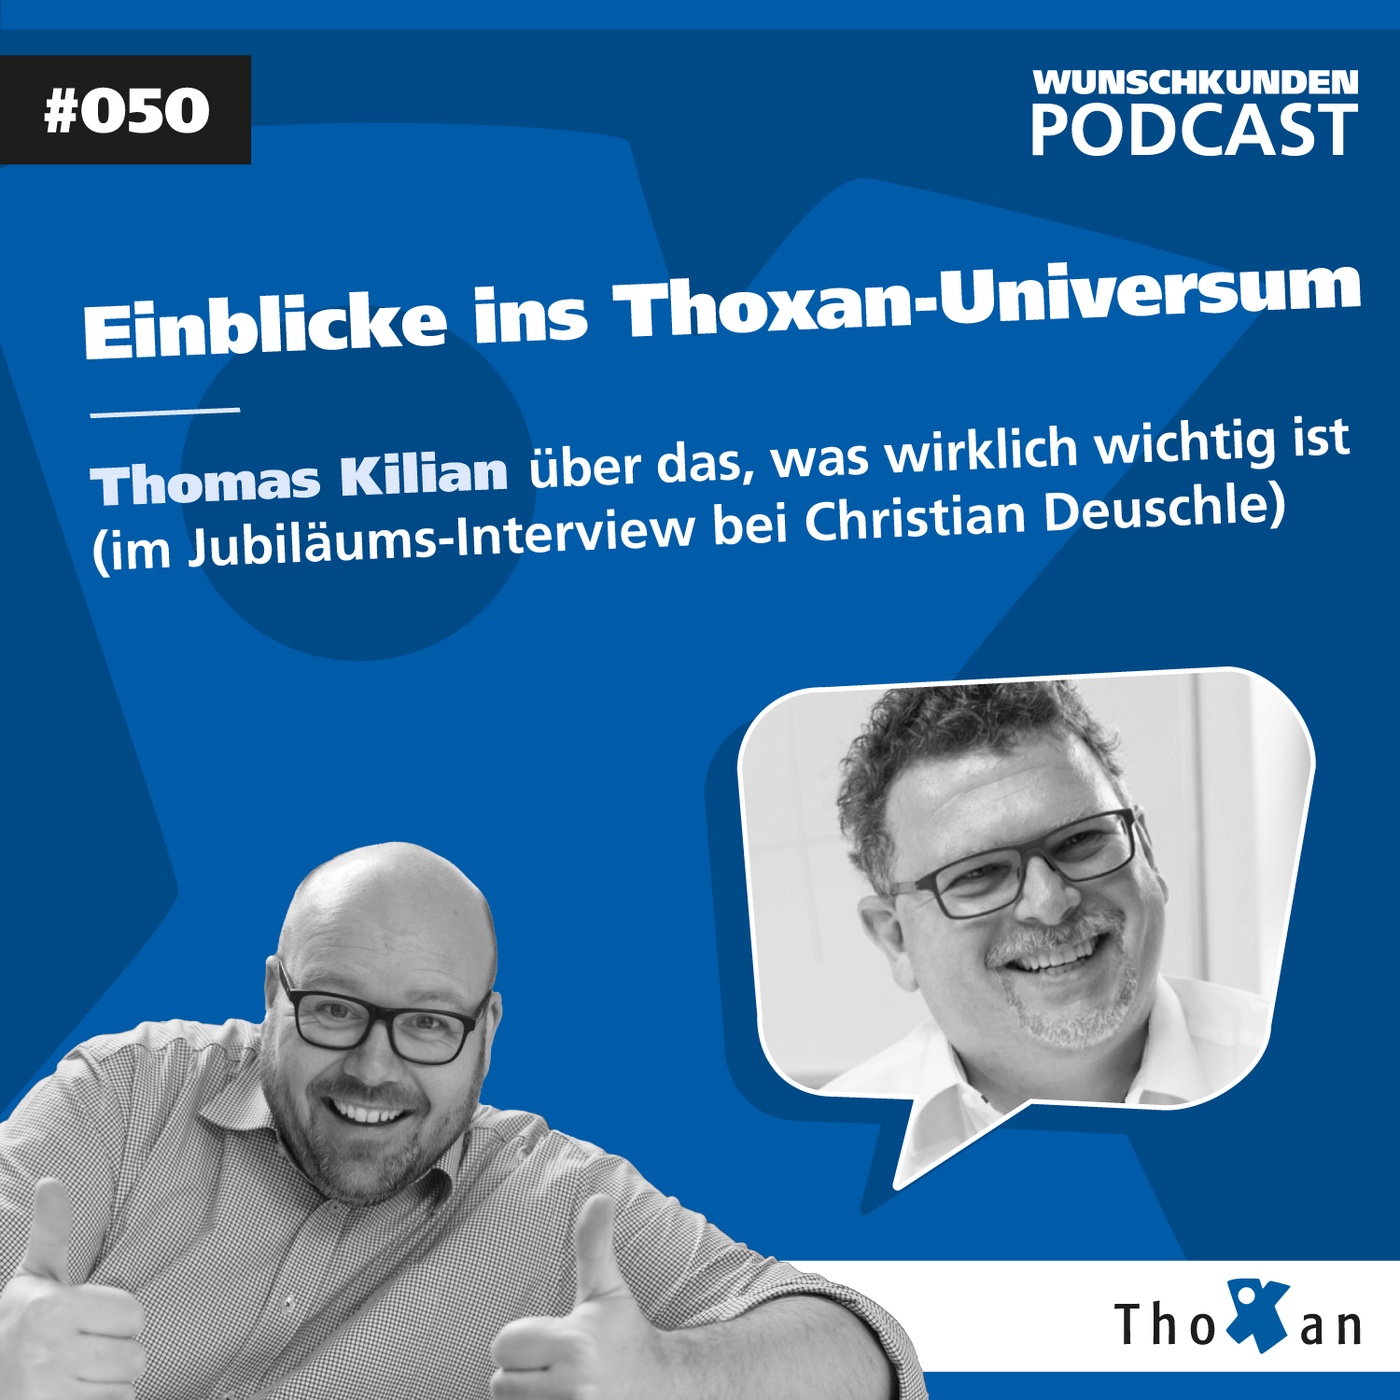 Einblicke ins Thoxan-Universum: Thomas Kilian über das, was wirklich wichtig ist